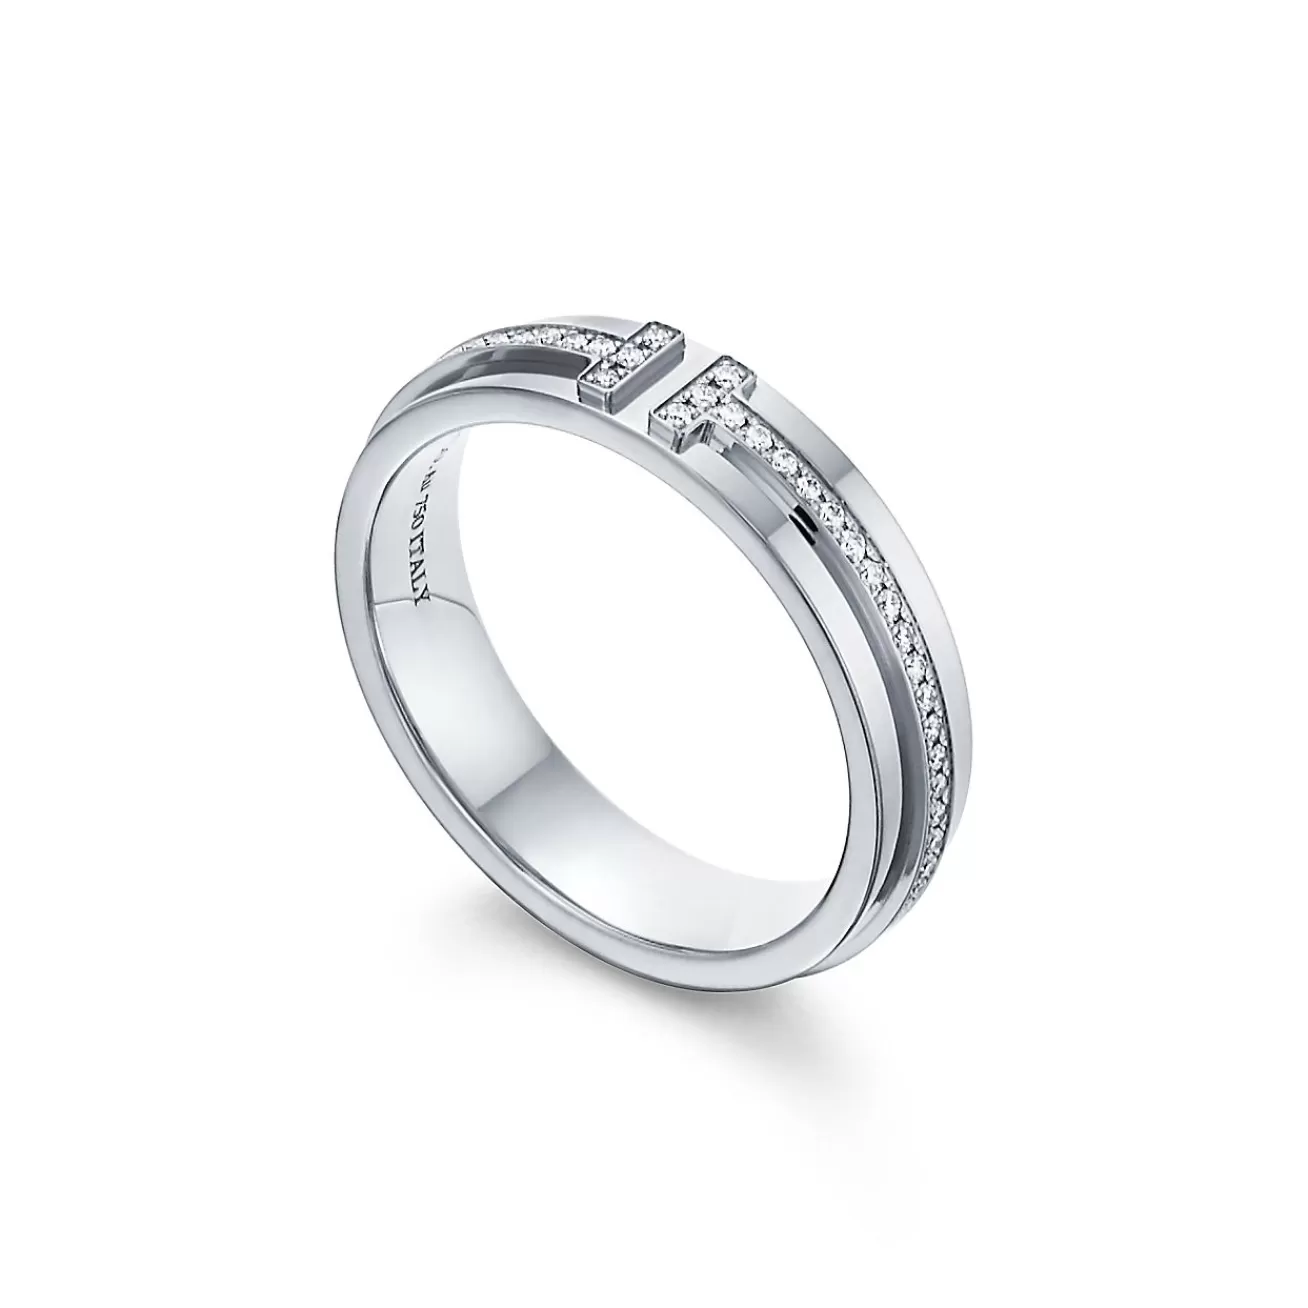 Tiffany & Co. Tiffany T narrow diamond ring in 18k white gold, 4.5 mm wide. | ^Women Rings | Men's Jewelry